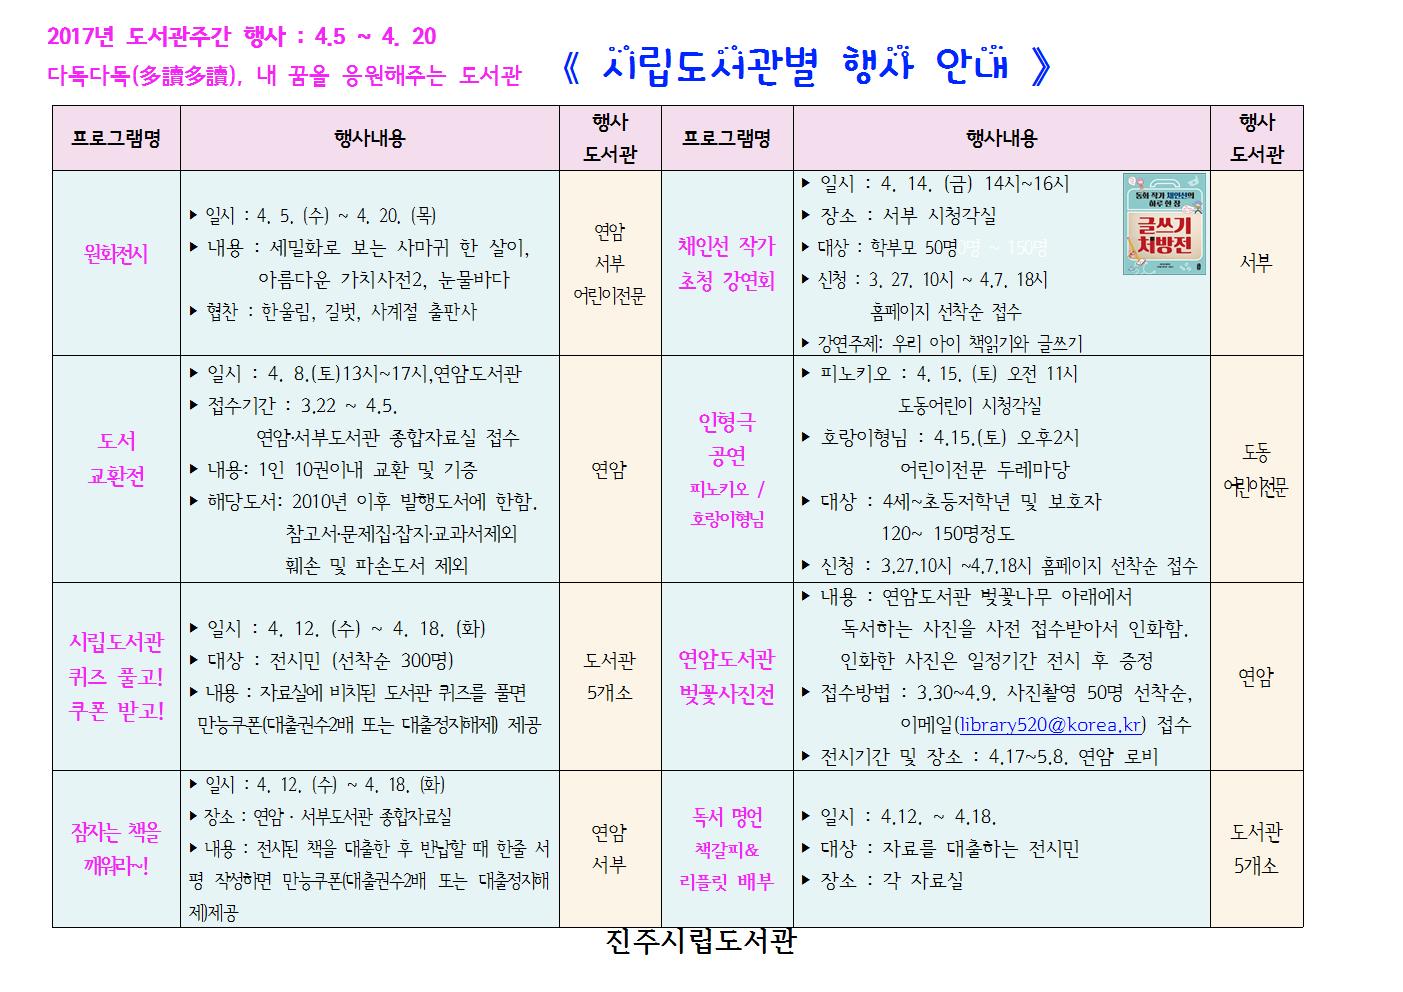 2017년 도서관 주간 행사 안내